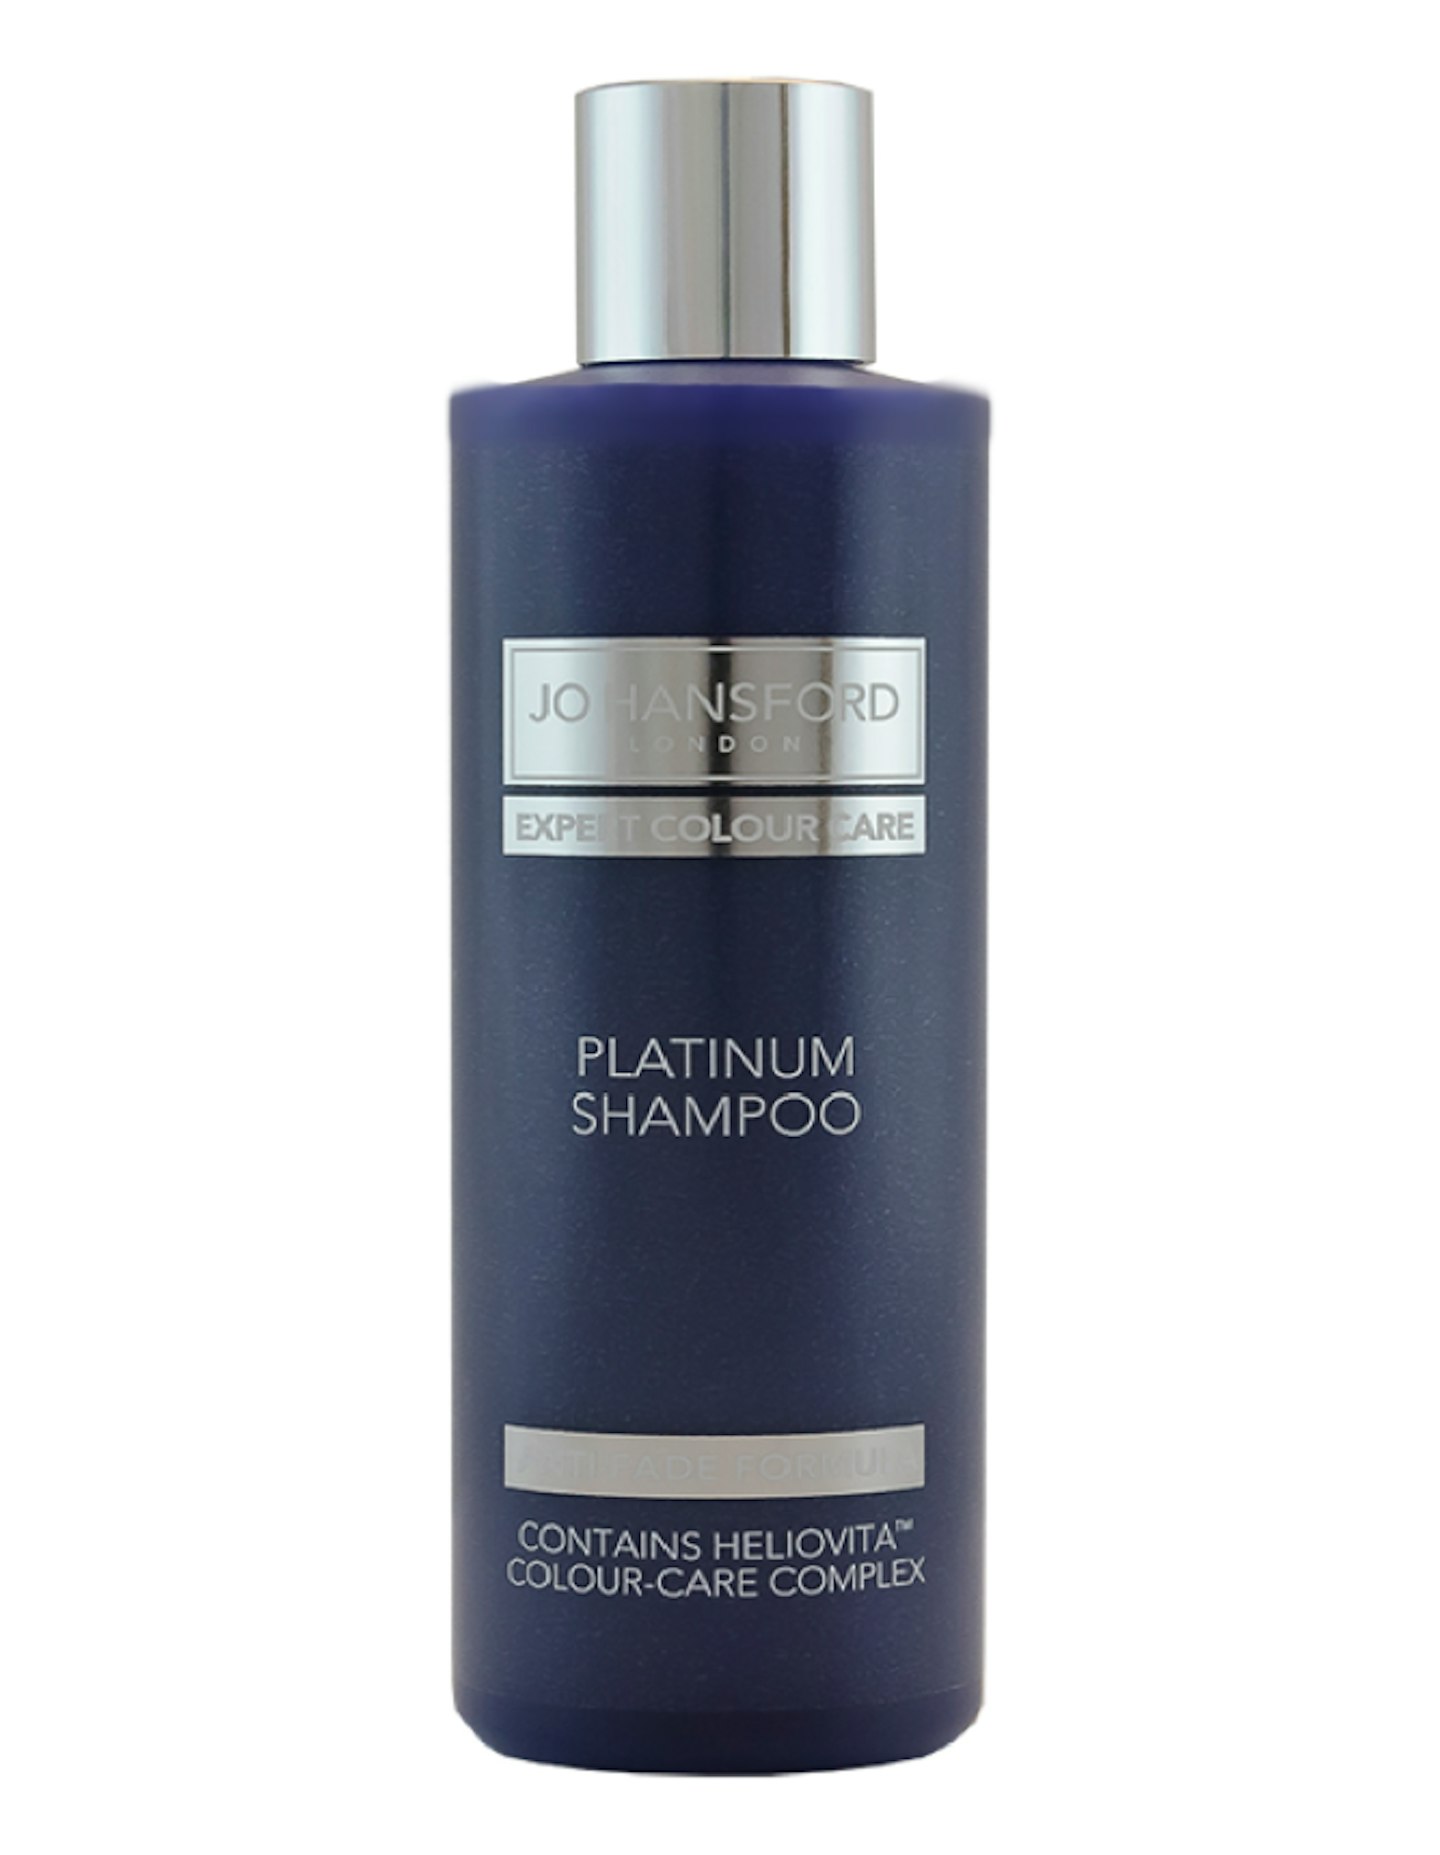 Jo Hansford Expert Colour Care Platinum Shampoo, £13.30